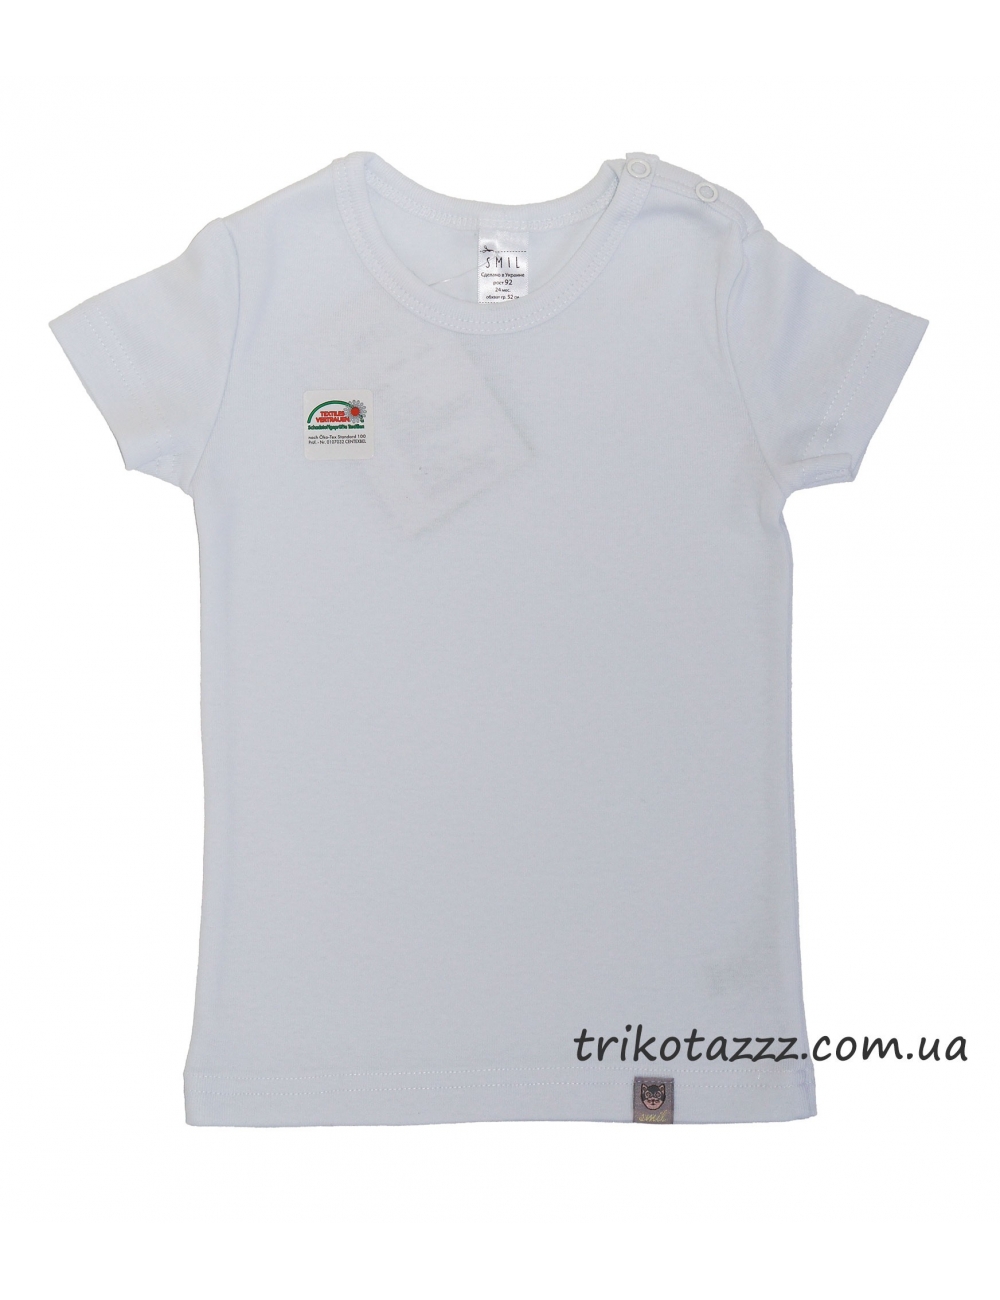 Детская футболка для девочки тм"Смил" белая